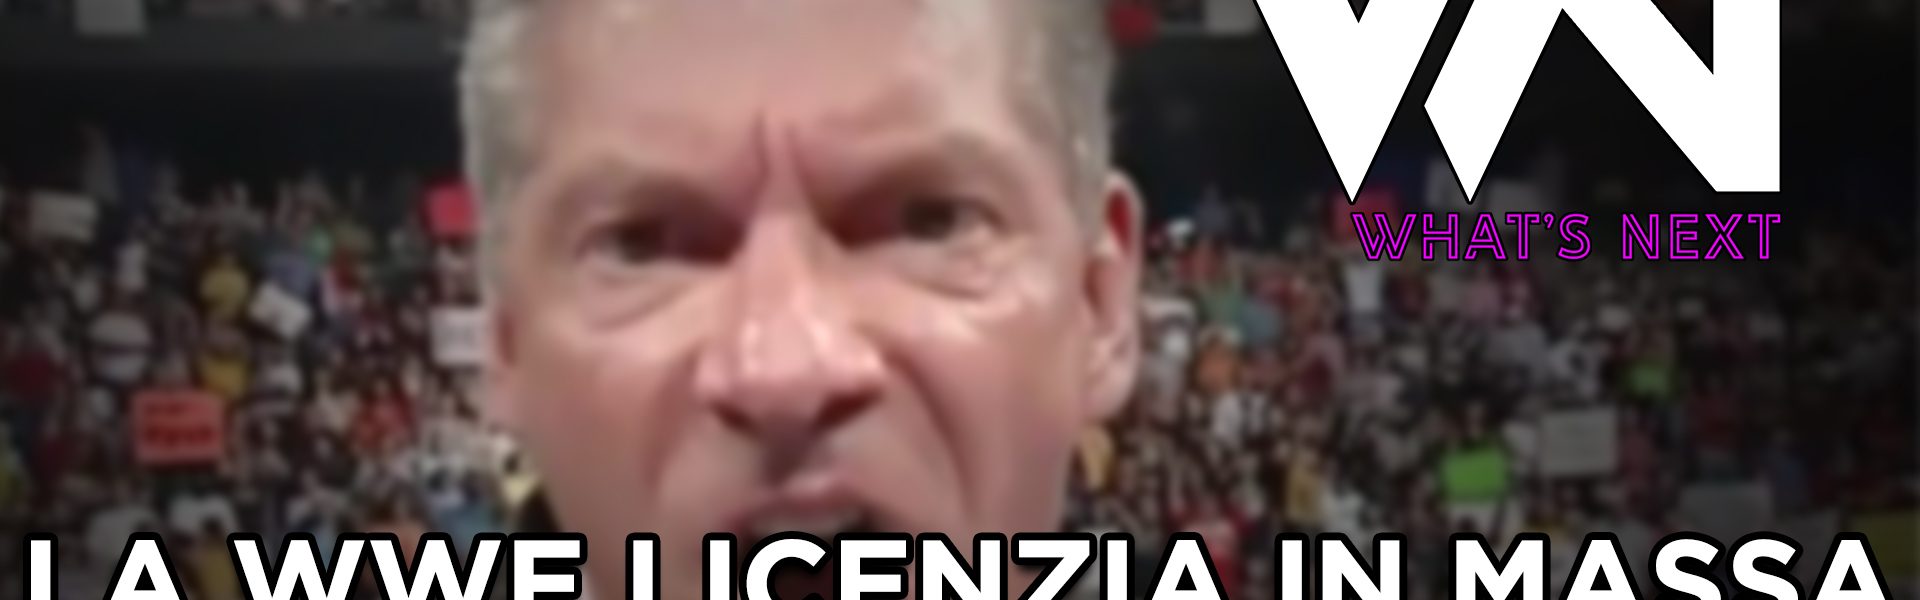 La WWE licenzia in massa di nuovo, perchè? - What's Next #120